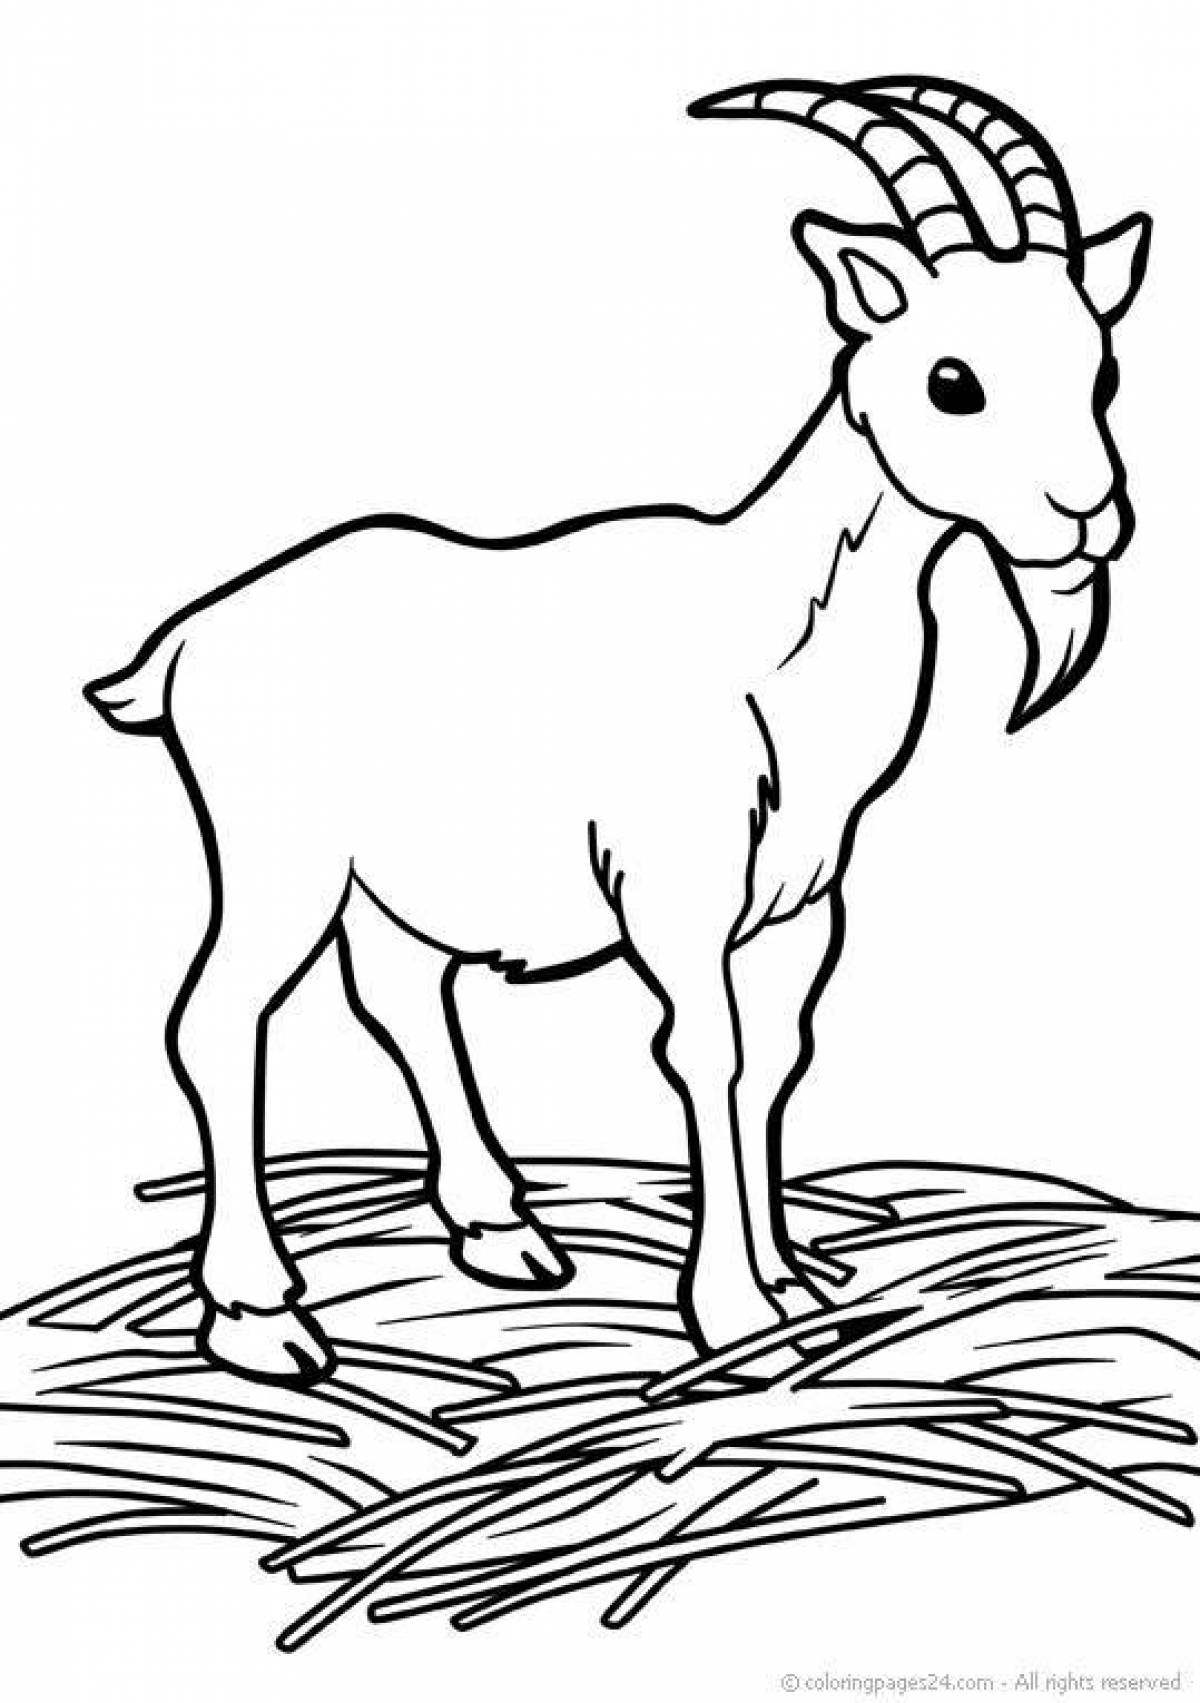 Забавная раскраска козла для детей